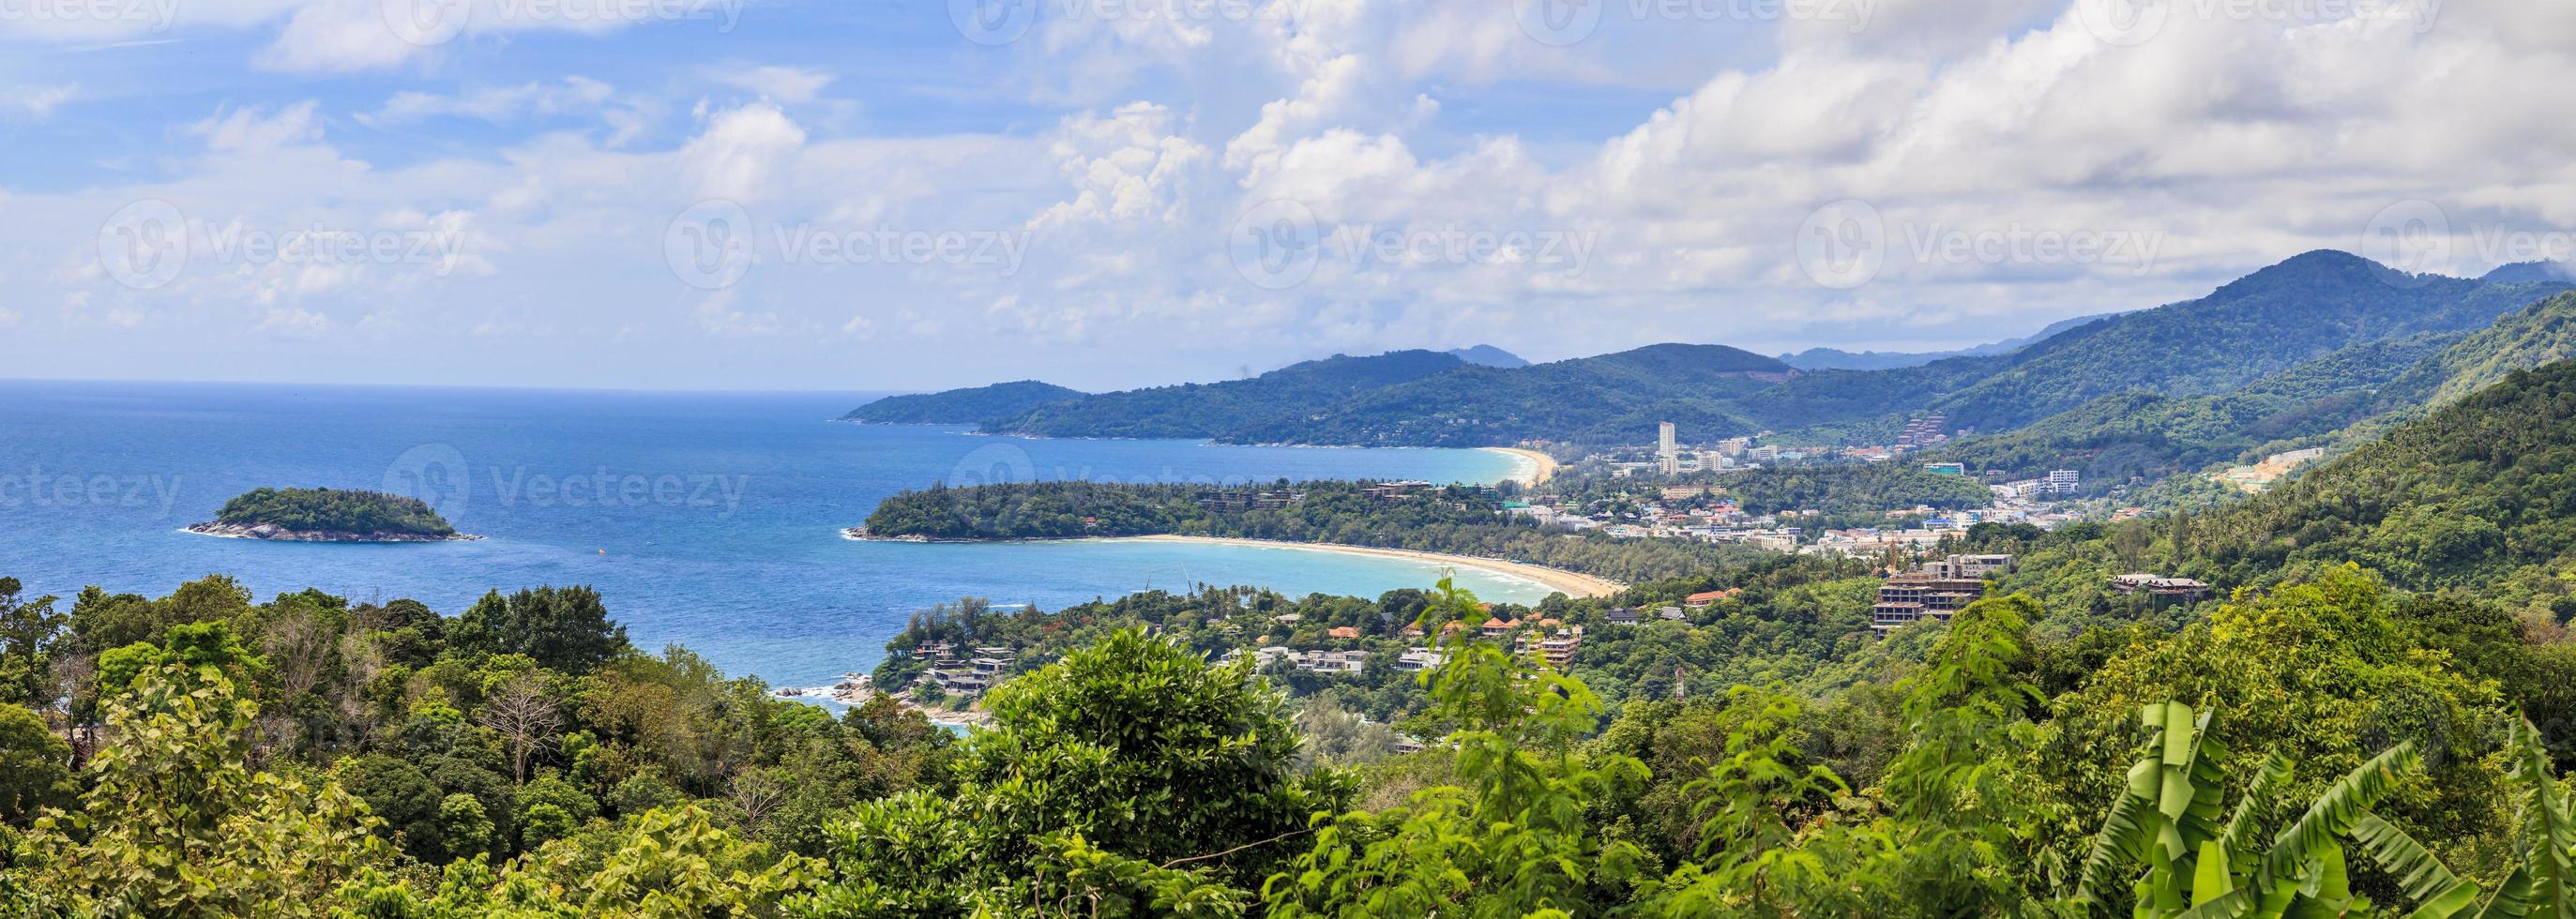 vue depuis le point de vue de karon sur l'île de phuket photo